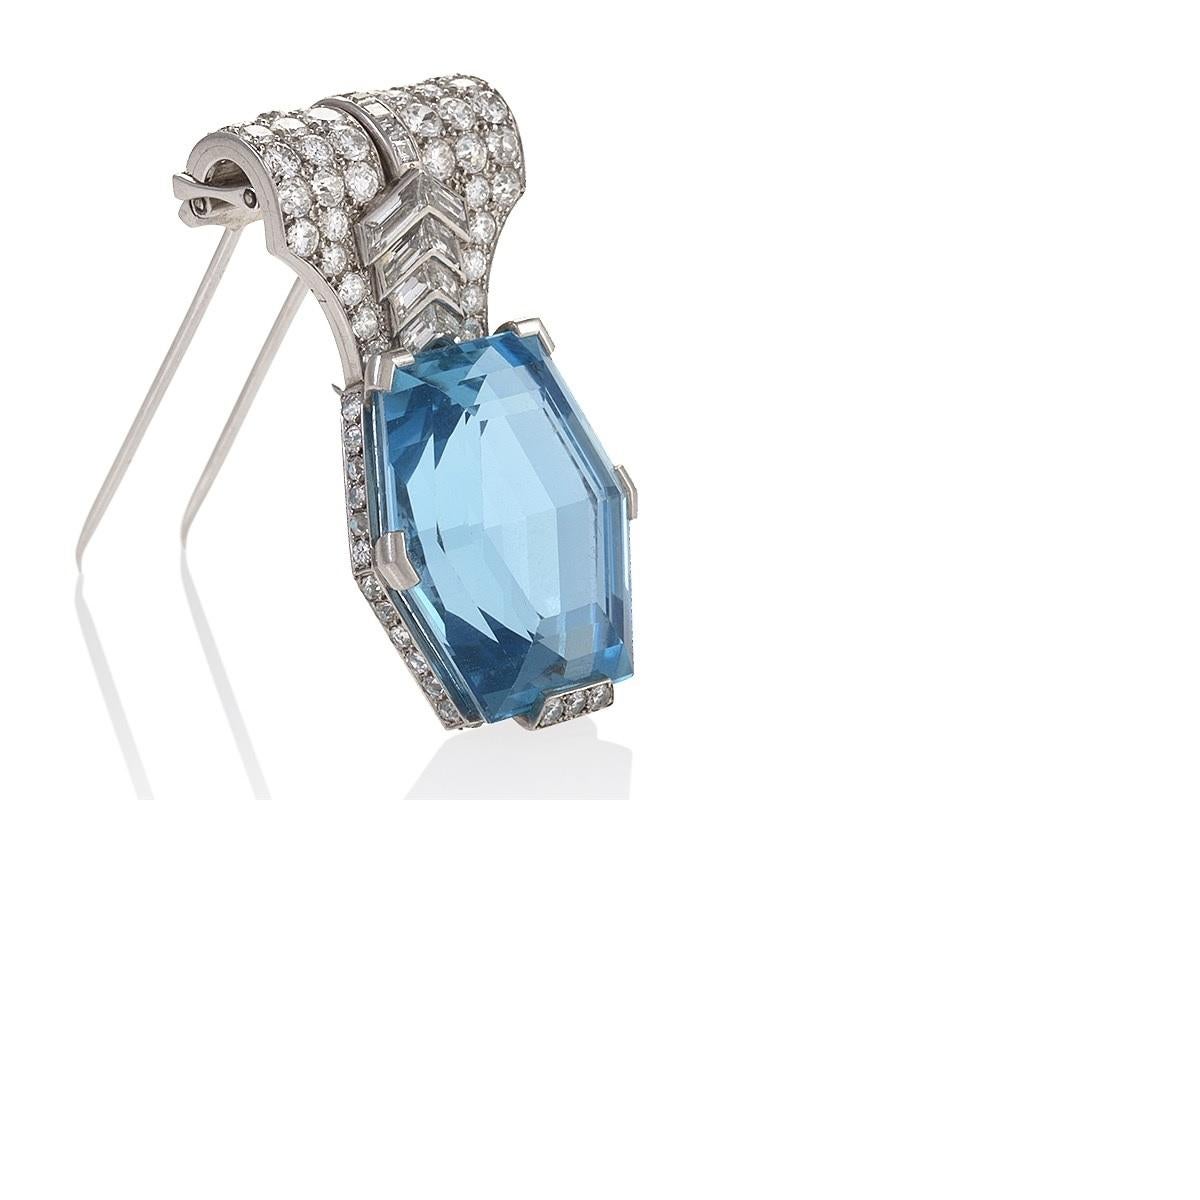 Diese seltene Aquamarin-Brosche von Cartier Paris mit ihrem kühnen Diamanten-Chevron-Muster stammt aus den 1930er Jahren, als die Designer eine dynamische Serie von Schmuckstücken mit diesen hellblauen Edelsteinen aus Brasilien entwarfen. Die